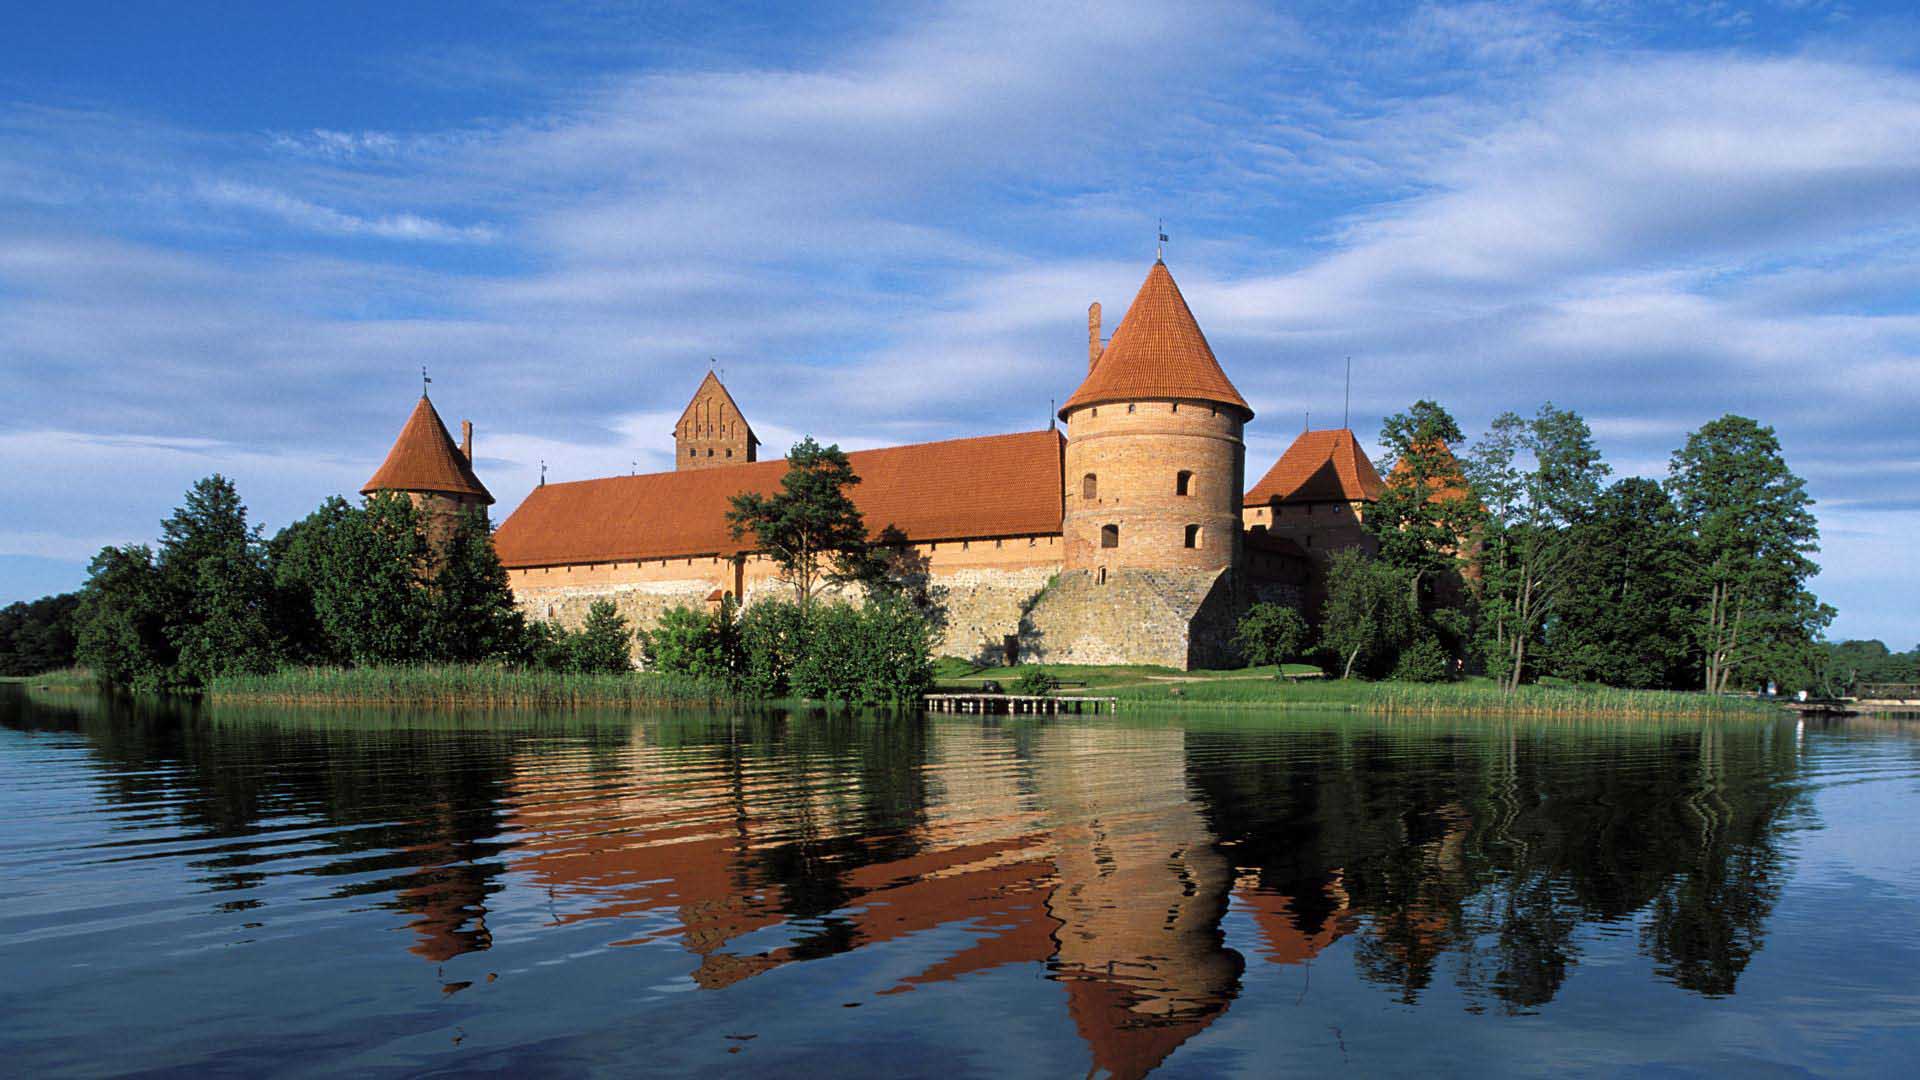 Beautiful Castles HD Wallpaper 2 587 - Bridge To Trakai